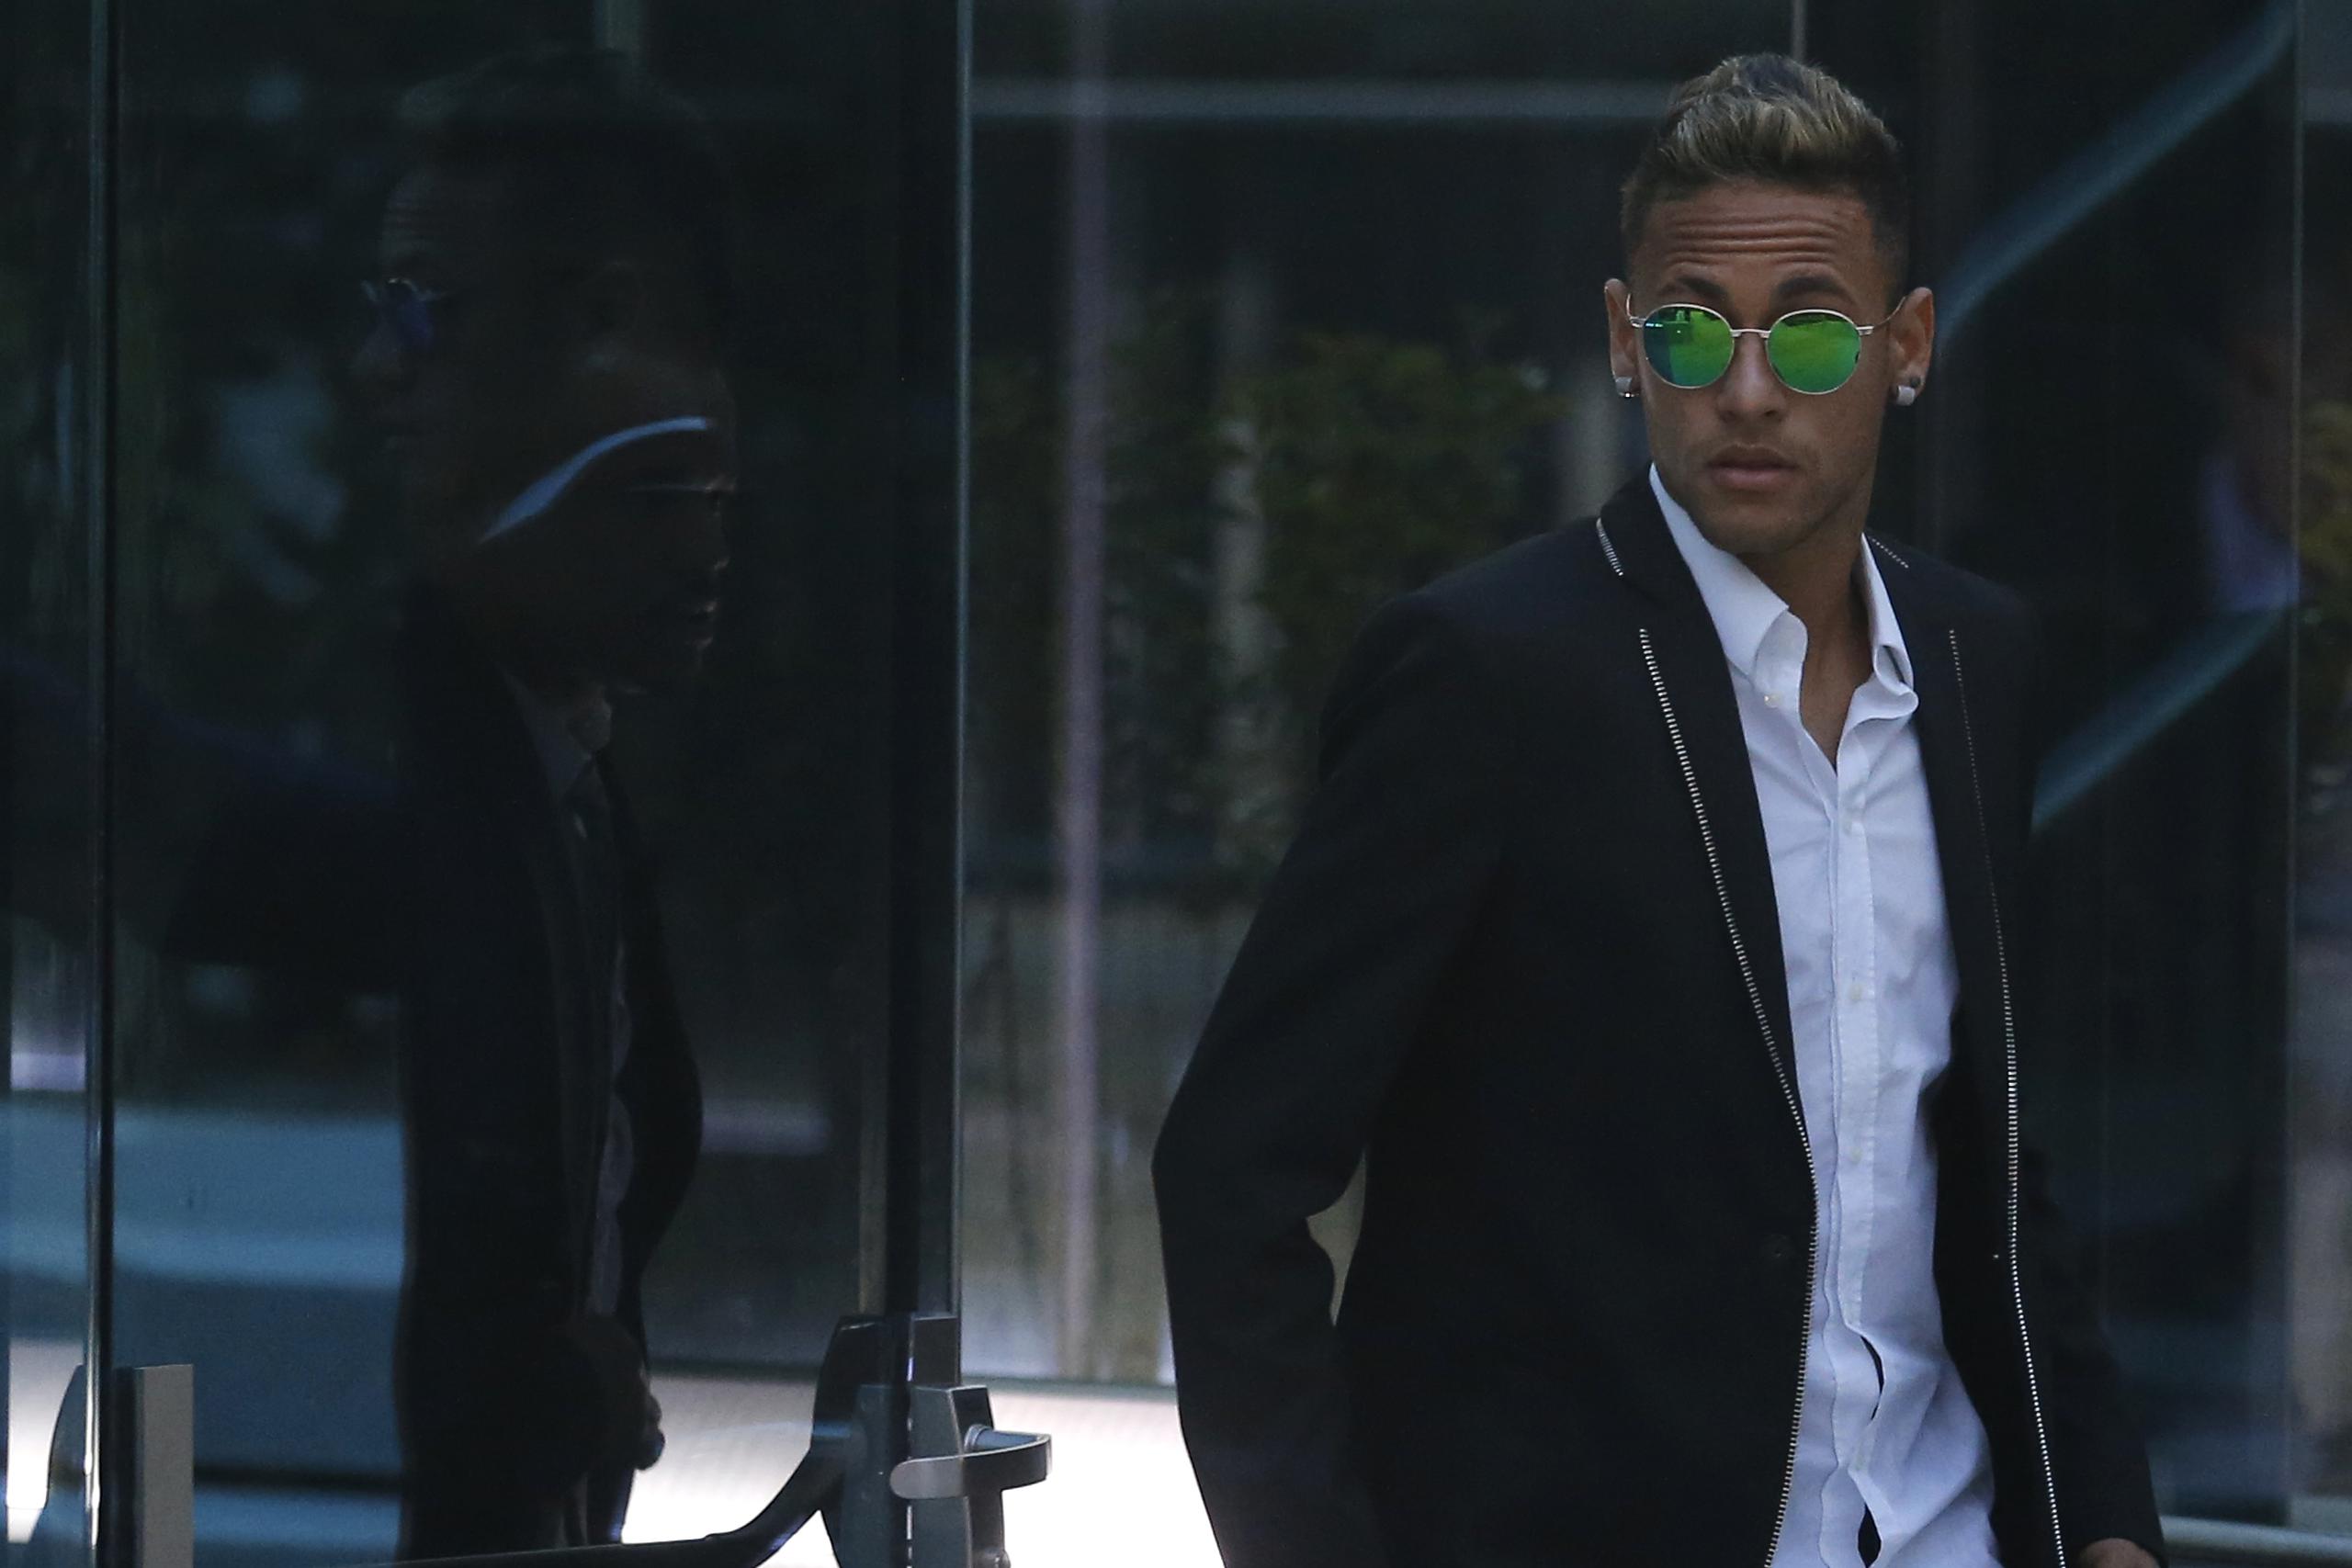 El delantero brasileño Neymar se retira de un juzgado en Madrid tras una indagatoria por irregularidades por su traspaso al Barcelona.